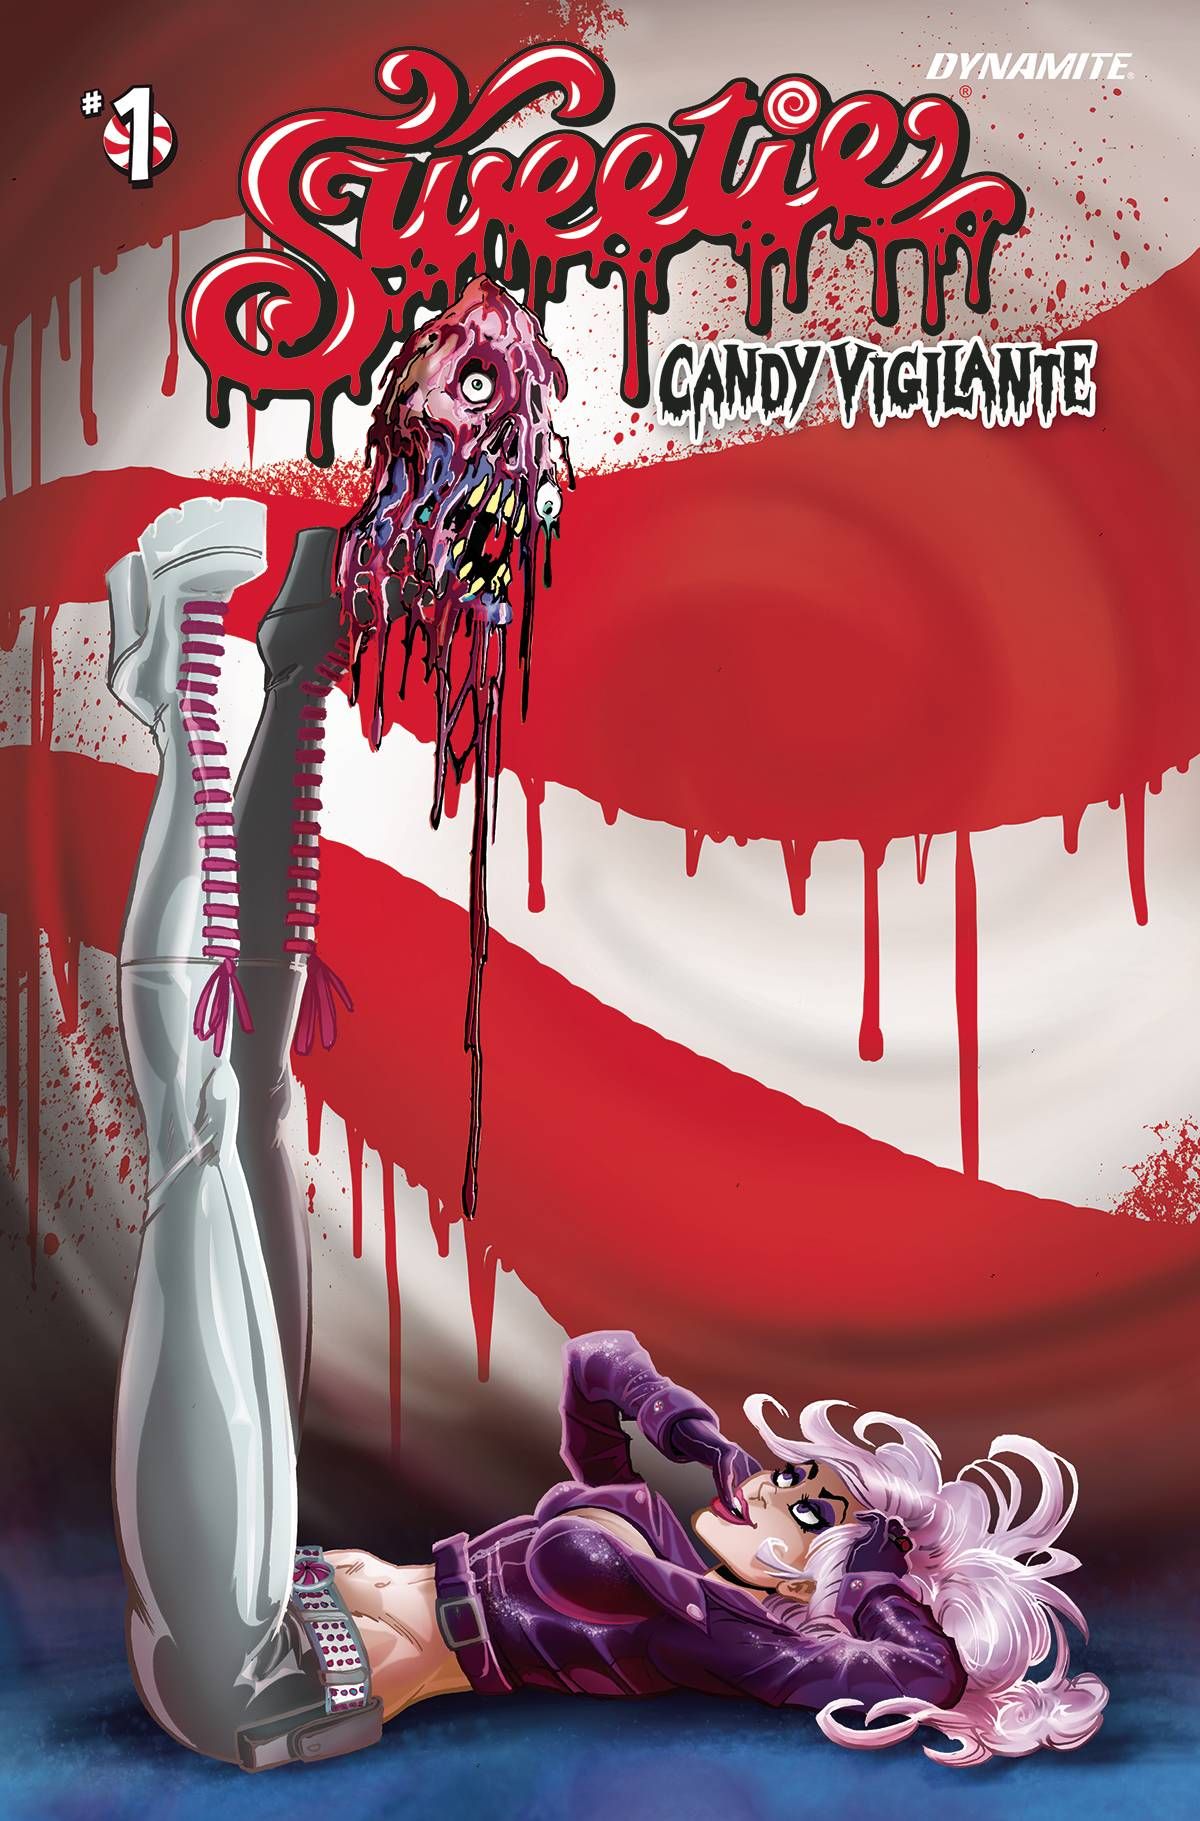 Sweetie Candy Vigilante #1 Comic